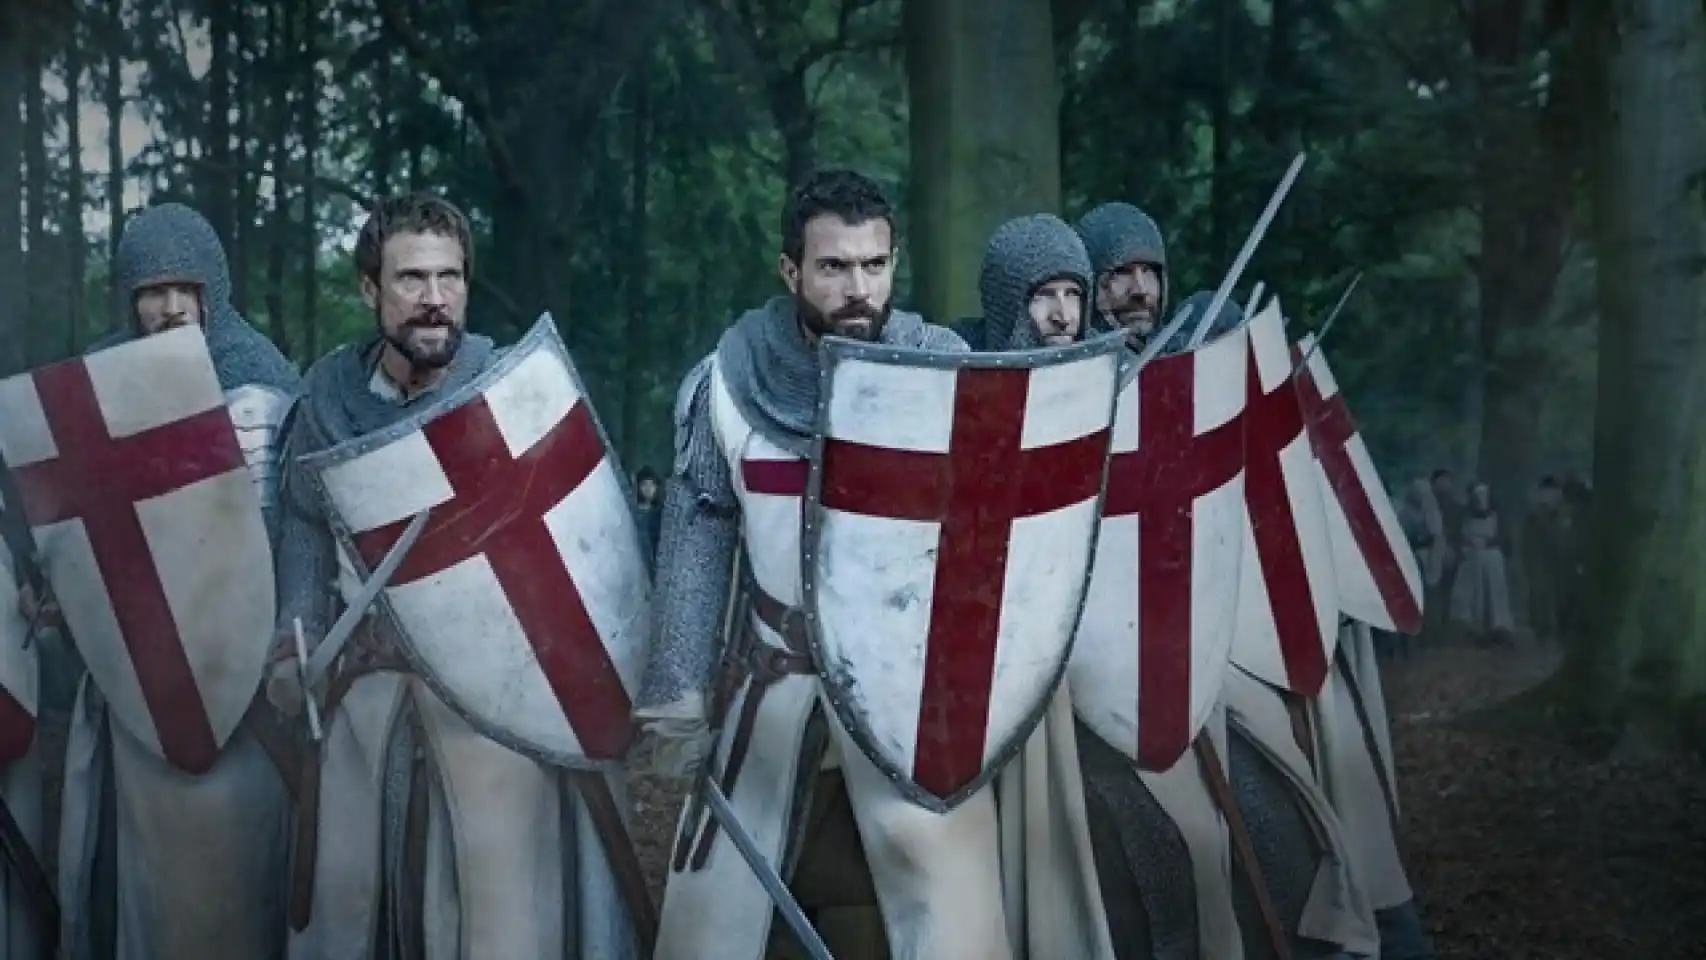 Los caballeros Templarios, imagen de referencia